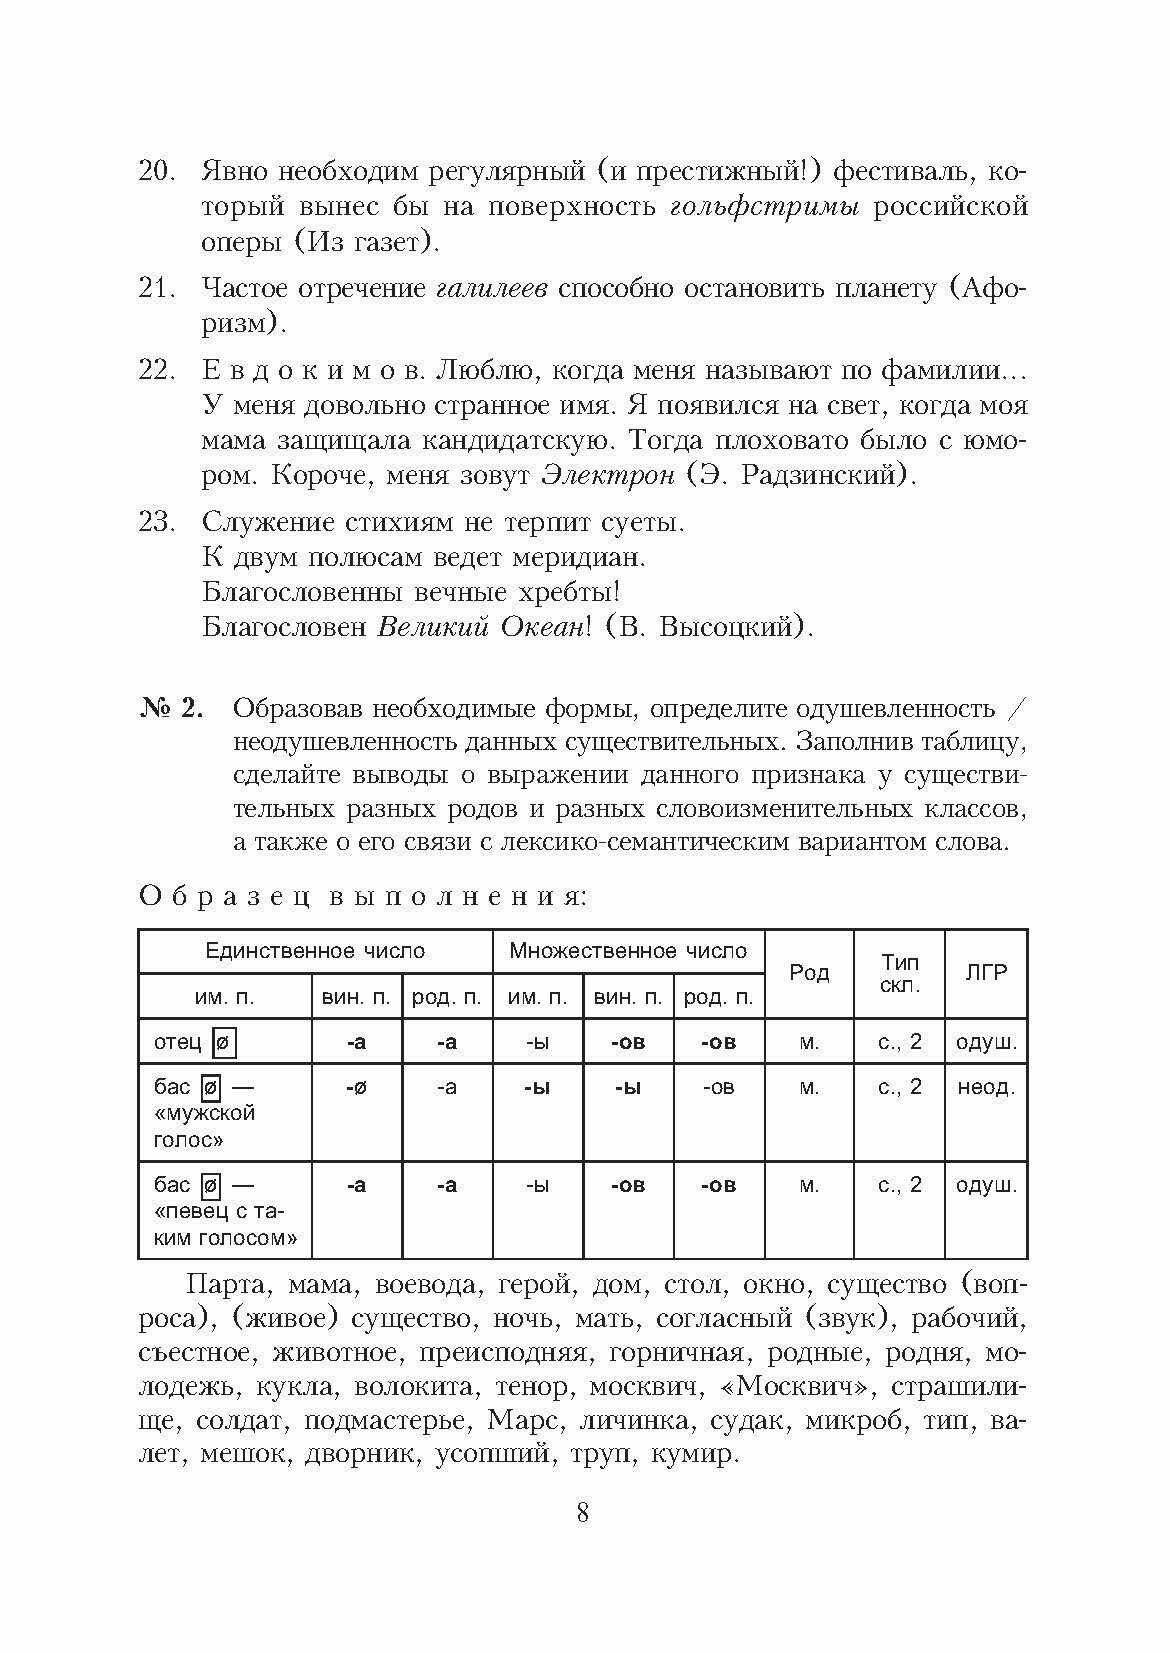 Морфология современного русского языка. Практикум - фото №2